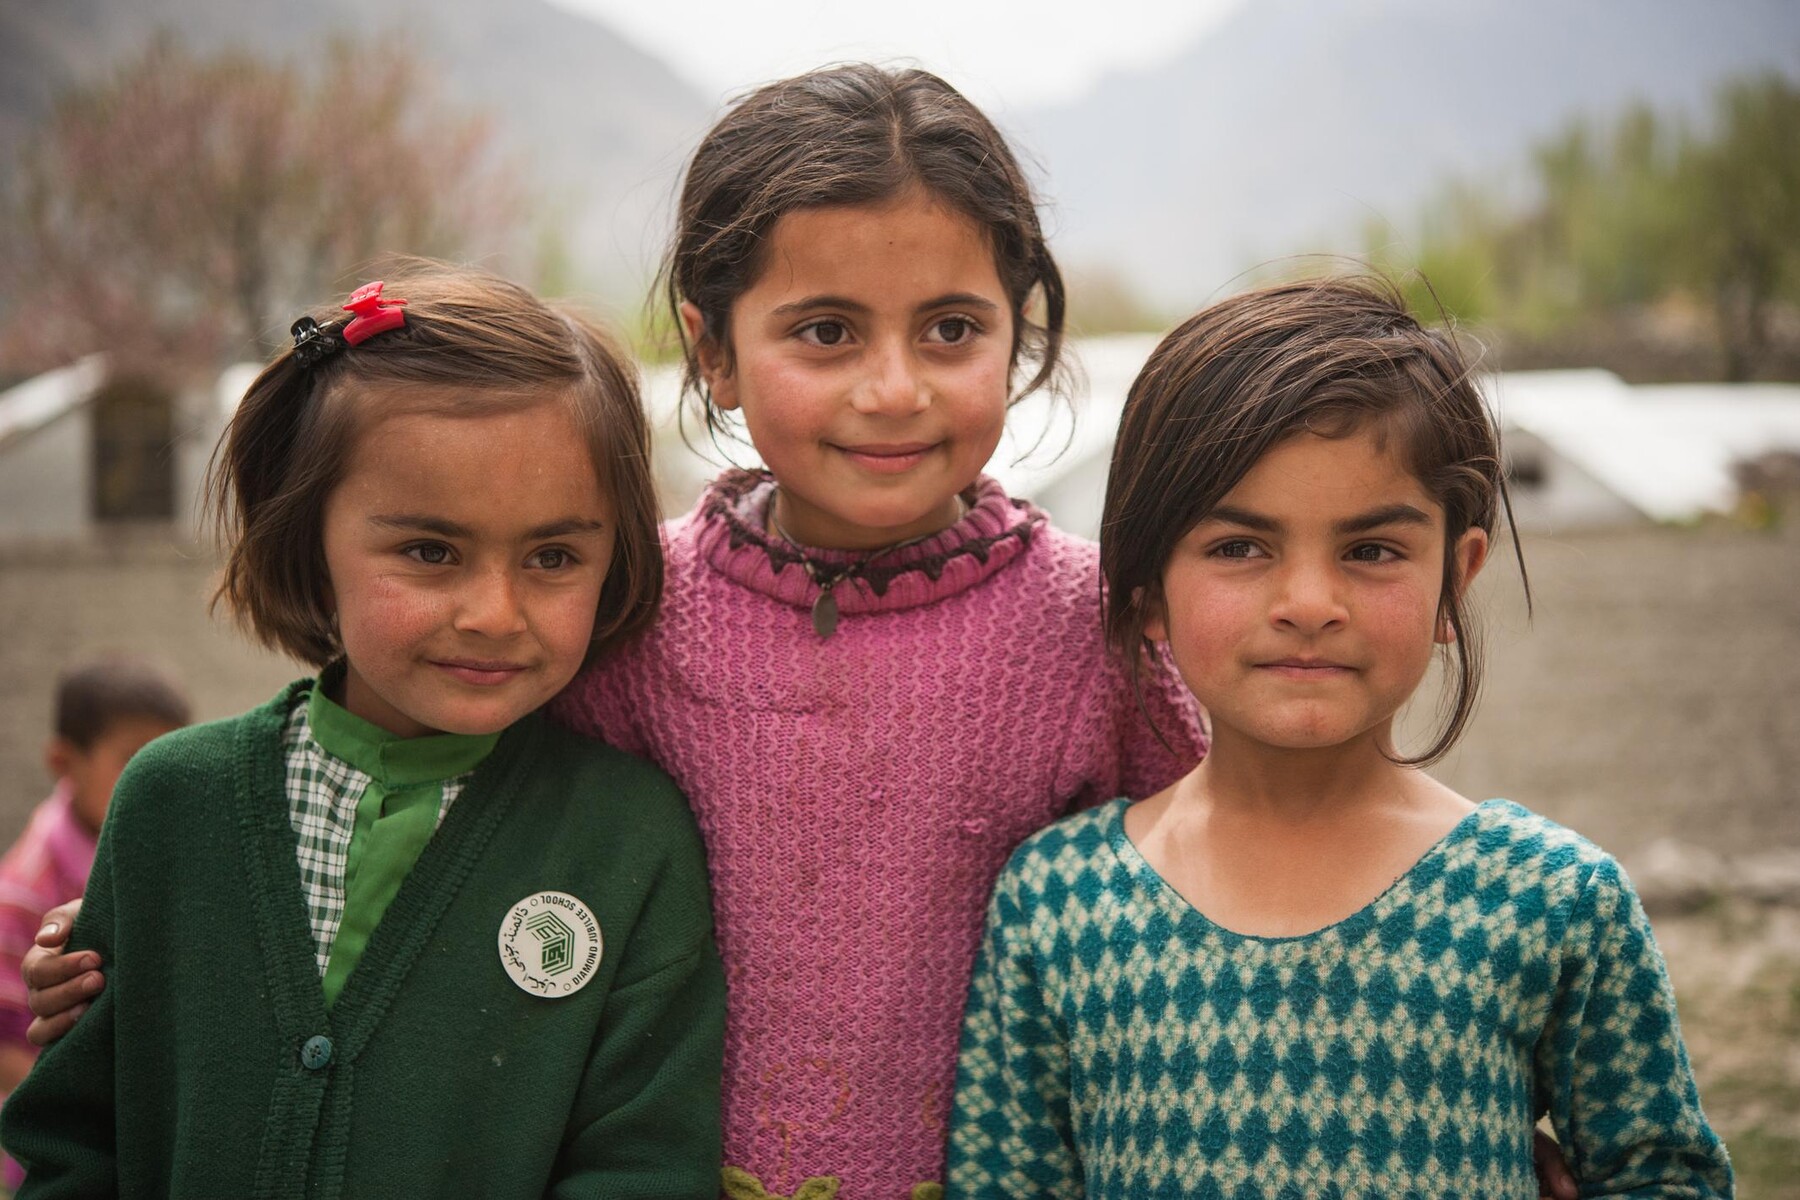 School children in Pakistan